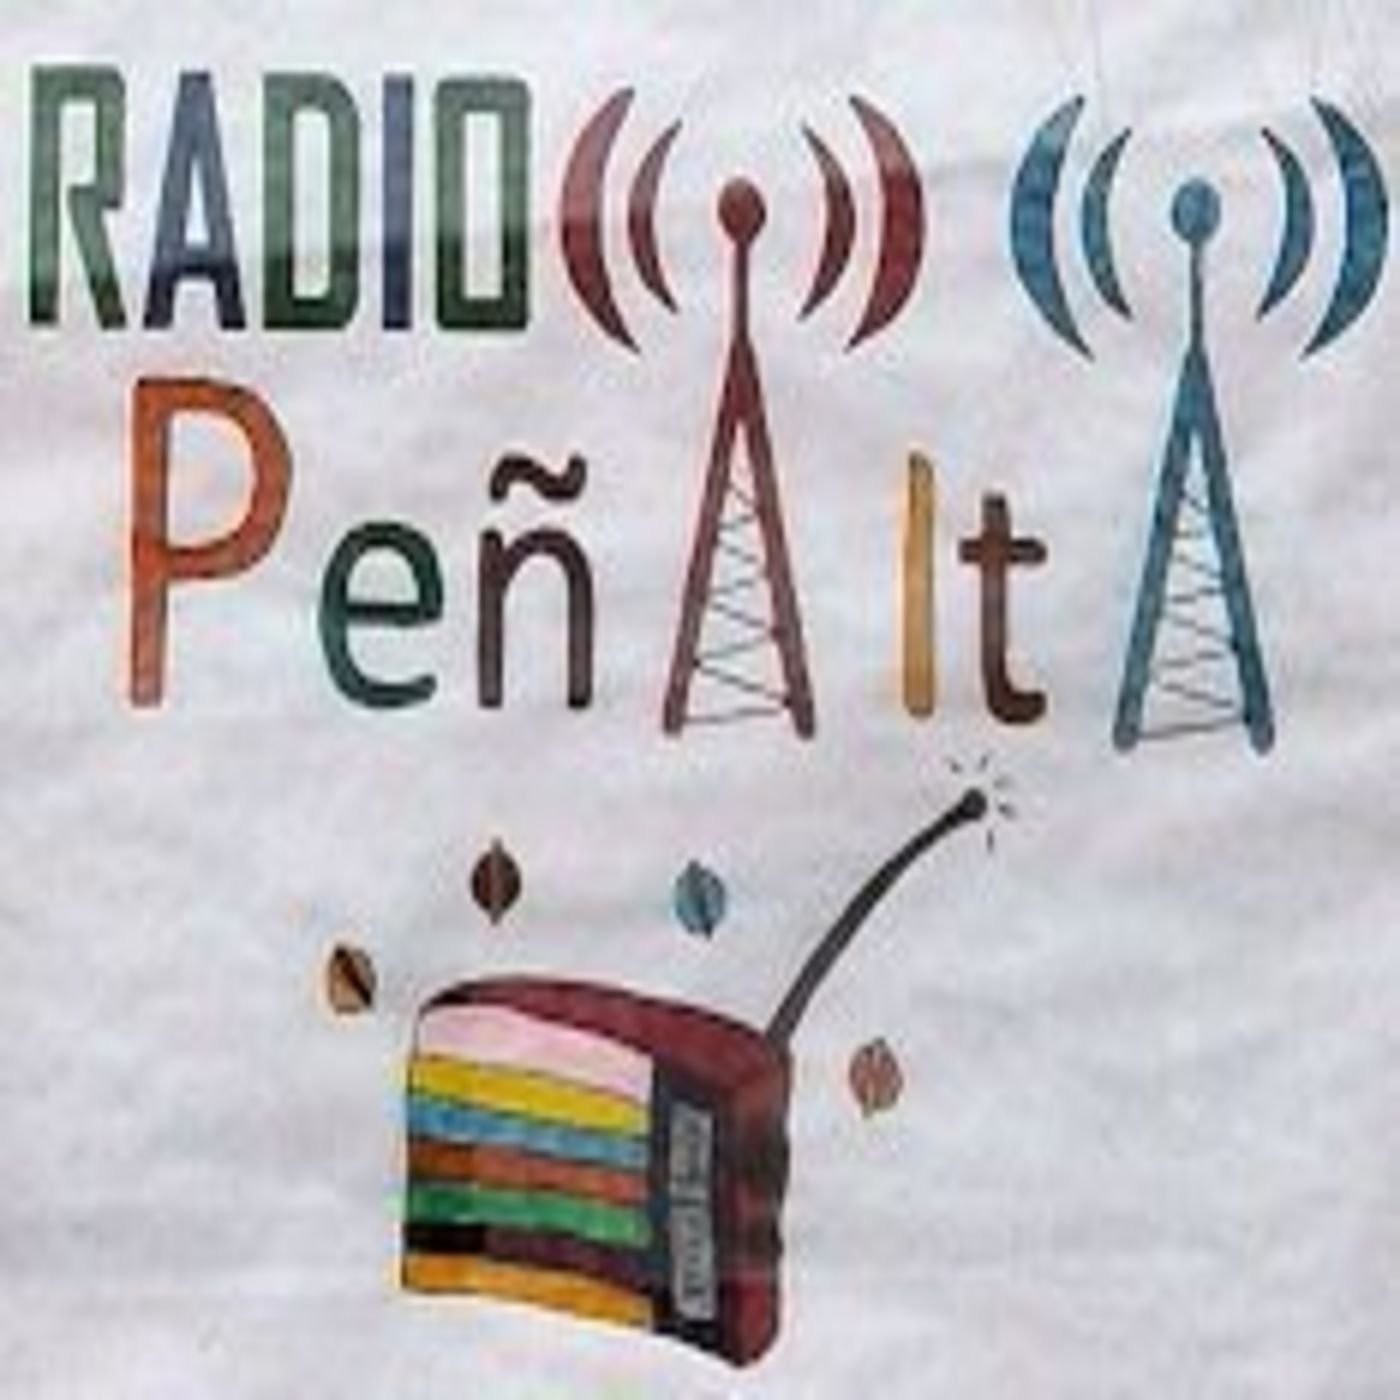 Radio Peñalta